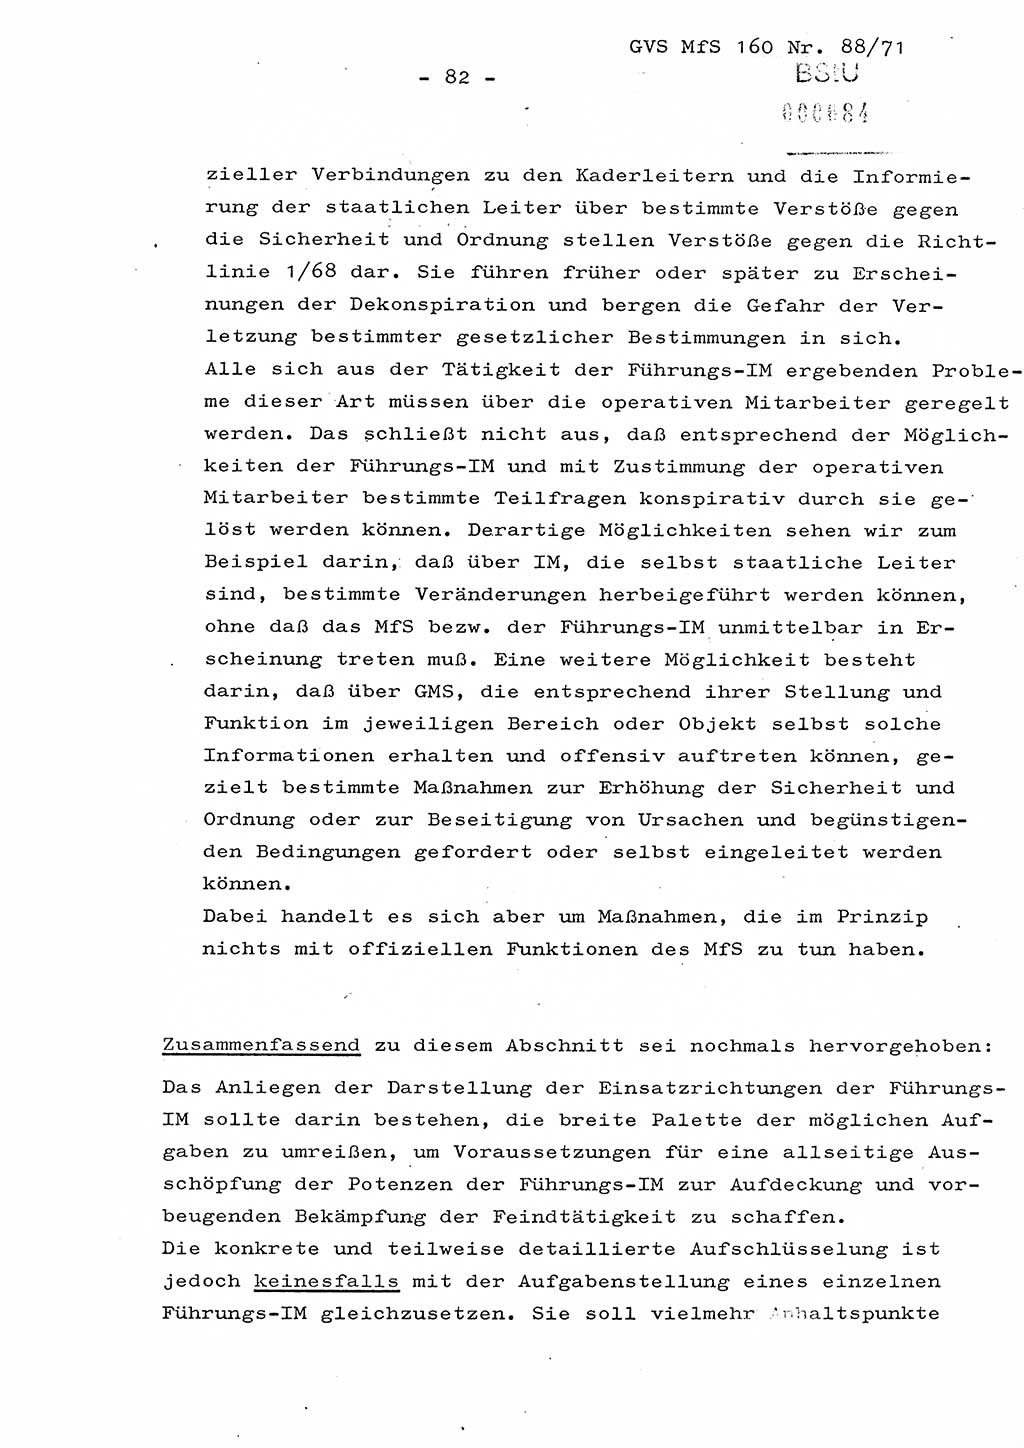 Dissertation Oberstleutnant Josef Schwarz (BV Schwerin), Major Fritz Amm (JHS), Hauptmann Peter Gräßler (JHS), Ministerium für Staatssicherheit (MfS) [Deutsche Demokratische Republik (DDR)], Juristische Hochschule (JHS), Geheime Verschlußsache (GVS) 160-88/71, Potsdam 1972, Seite 82 (Diss. MfS DDR JHS GVS 160-88/71 1972, S. 82)